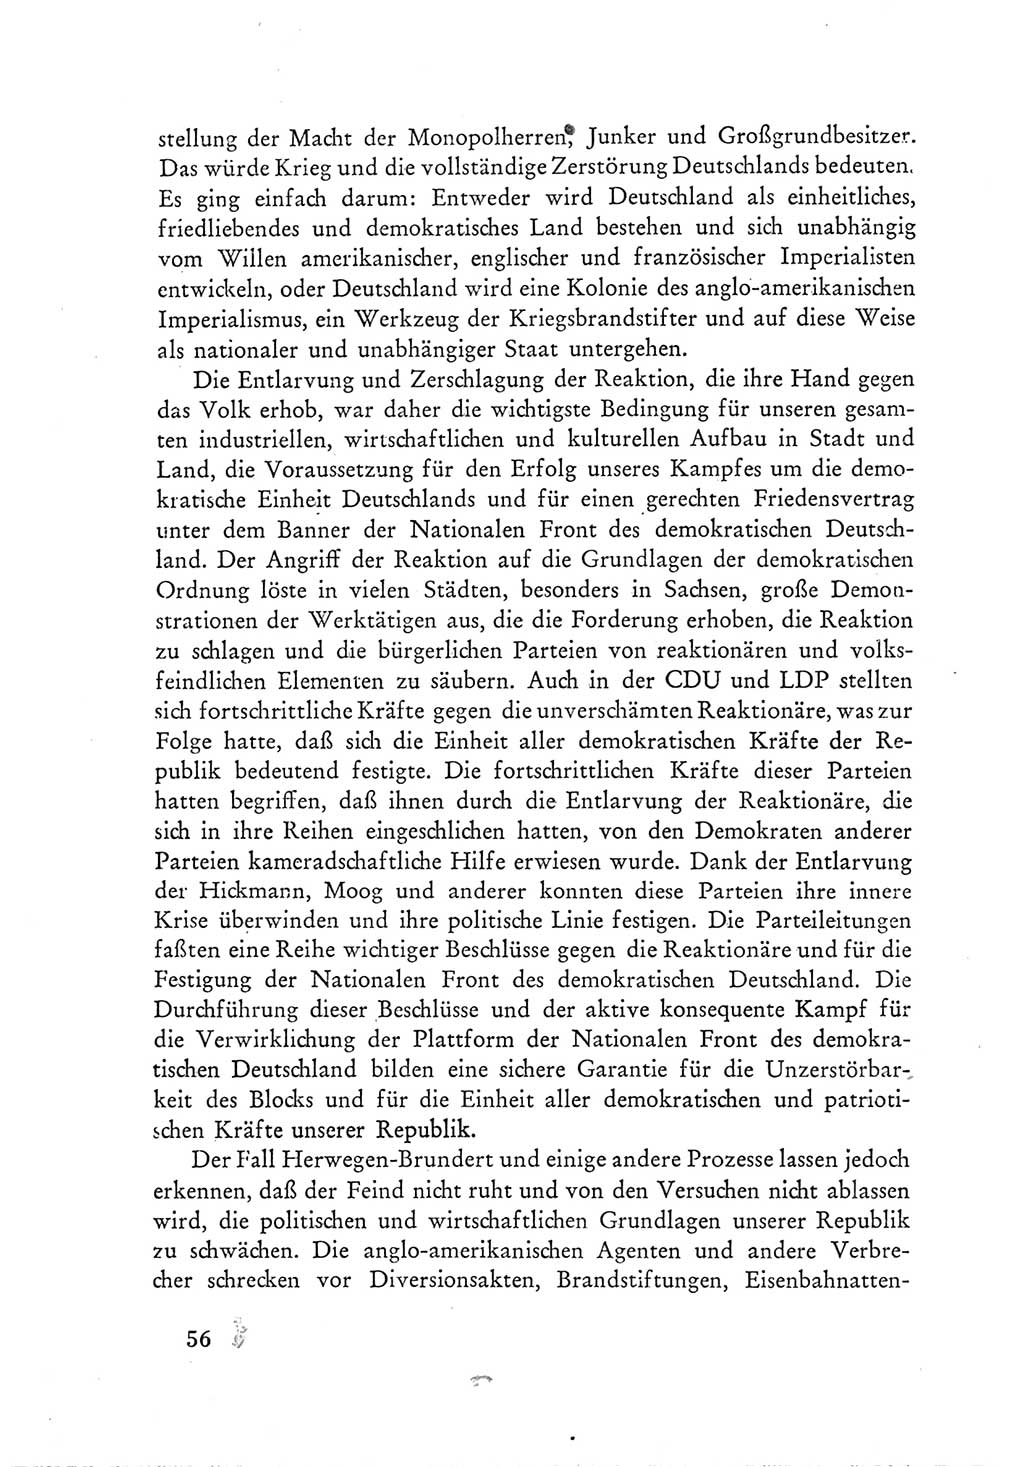 Protokoll der Verhandlungen des Ⅲ. Parteitages der Sozialistischen Einheitspartei Deutschlands (SED) [Deutsche Demokratische Republik (DDR)] 1950, Band 1, Seite 56 (Prot. Verh. Ⅲ. PT SED DDR 1950, Bd. 1, S. 56)